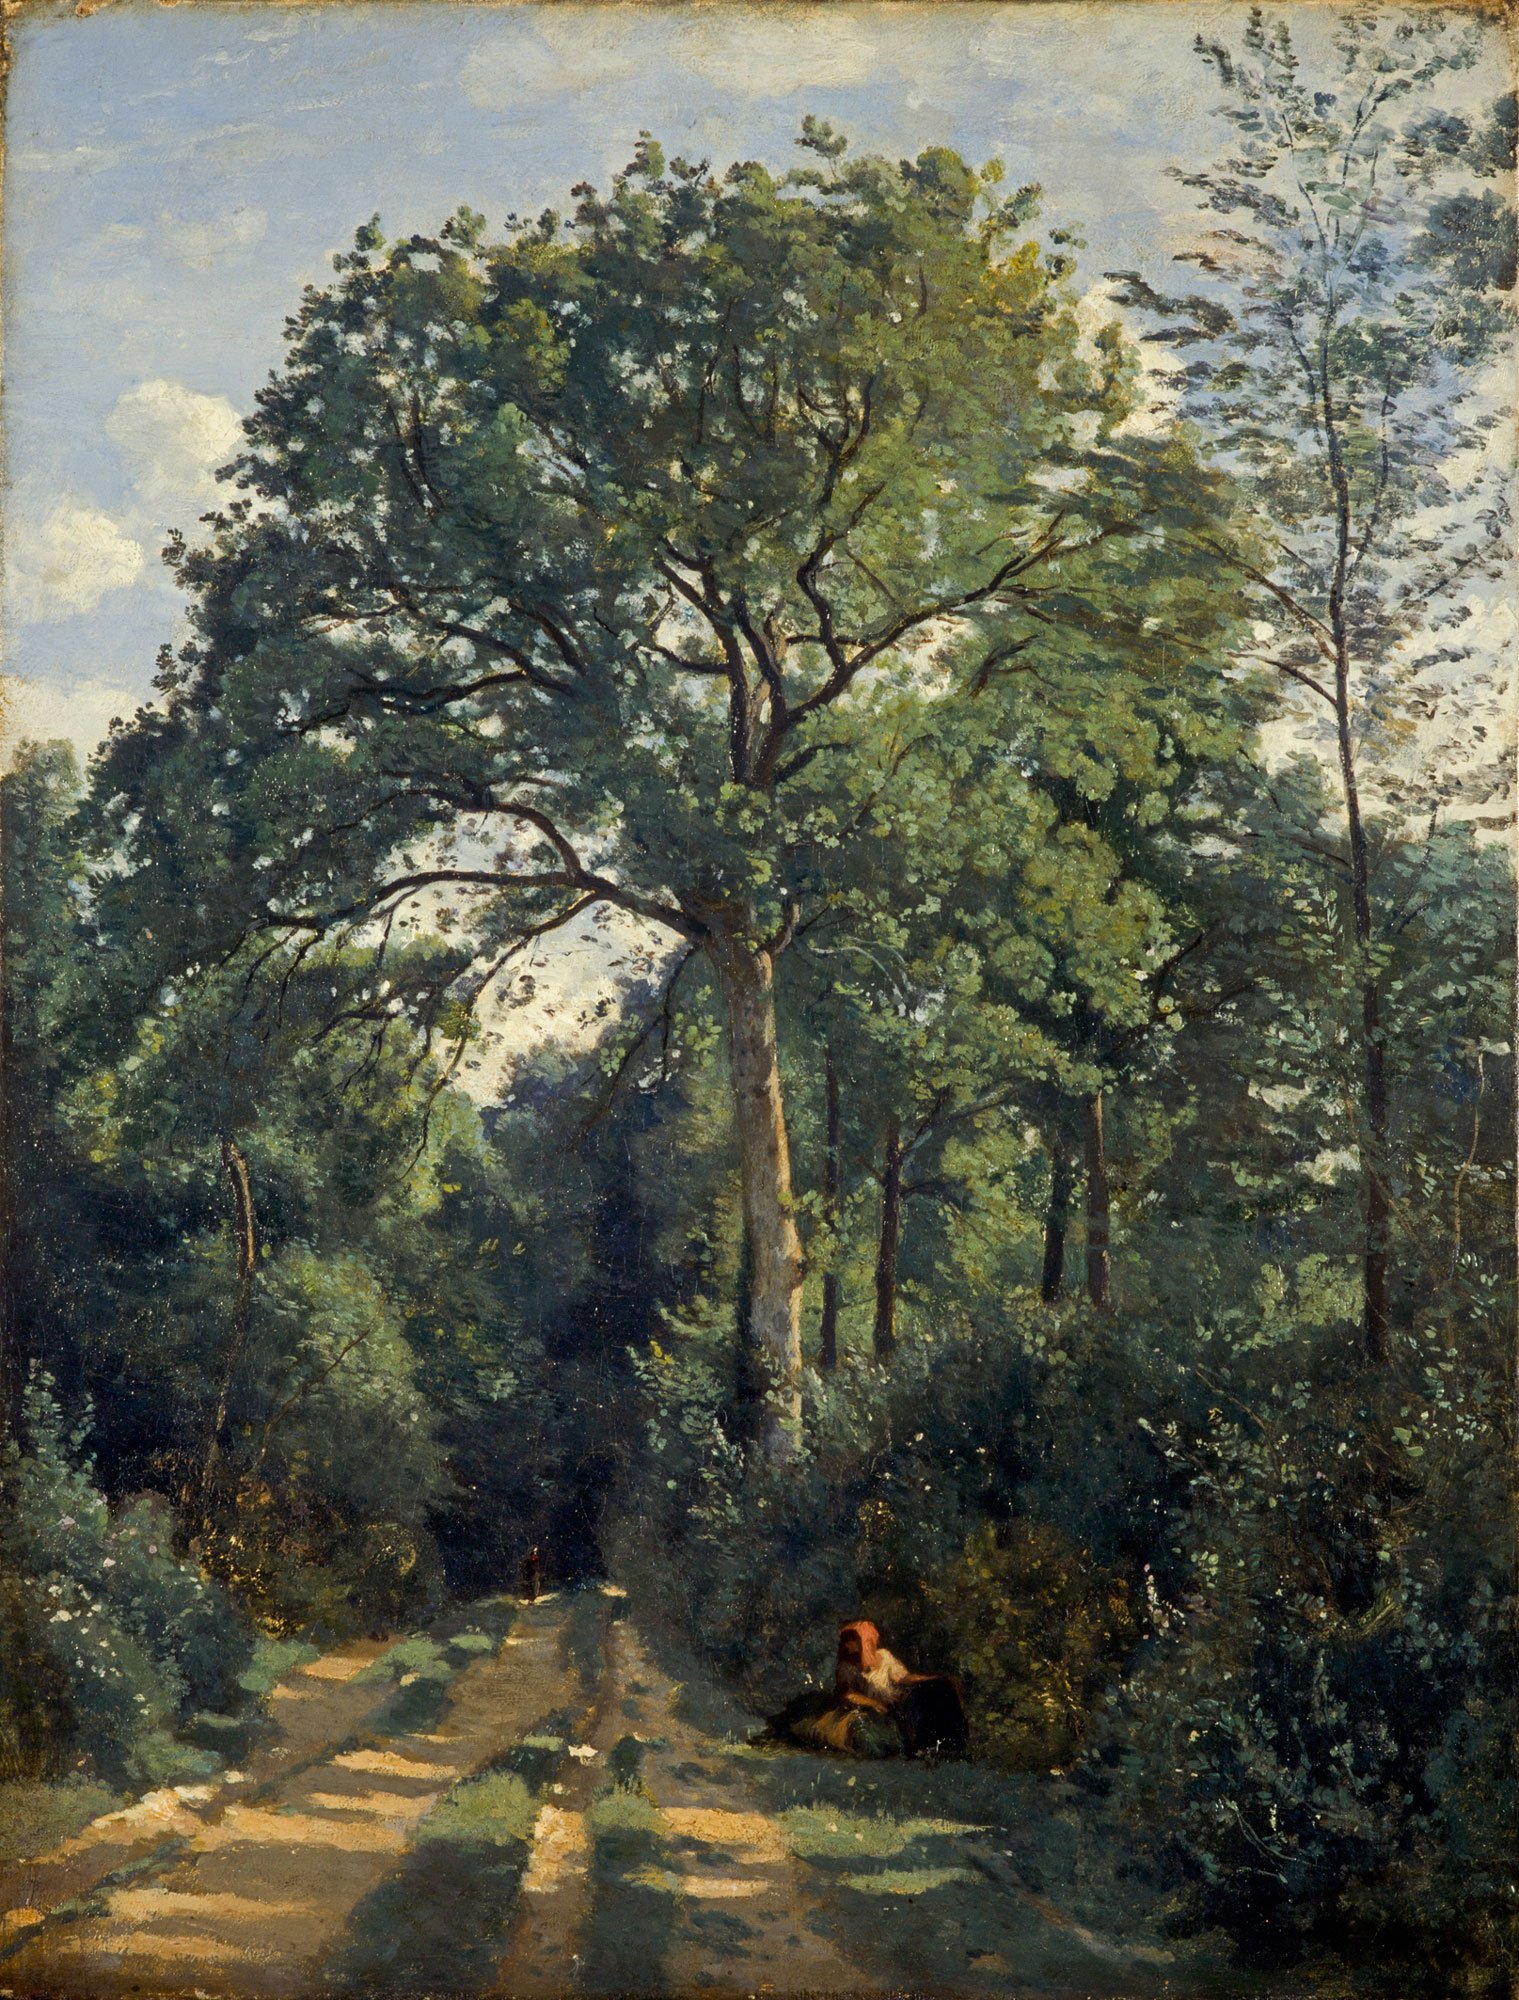 Ein Waldweg, der durch eine Wald geht. In der Mitte sieht man einen Baum und darunter sitzt eine Frau. Das Gemälde ist von Camille Corot.